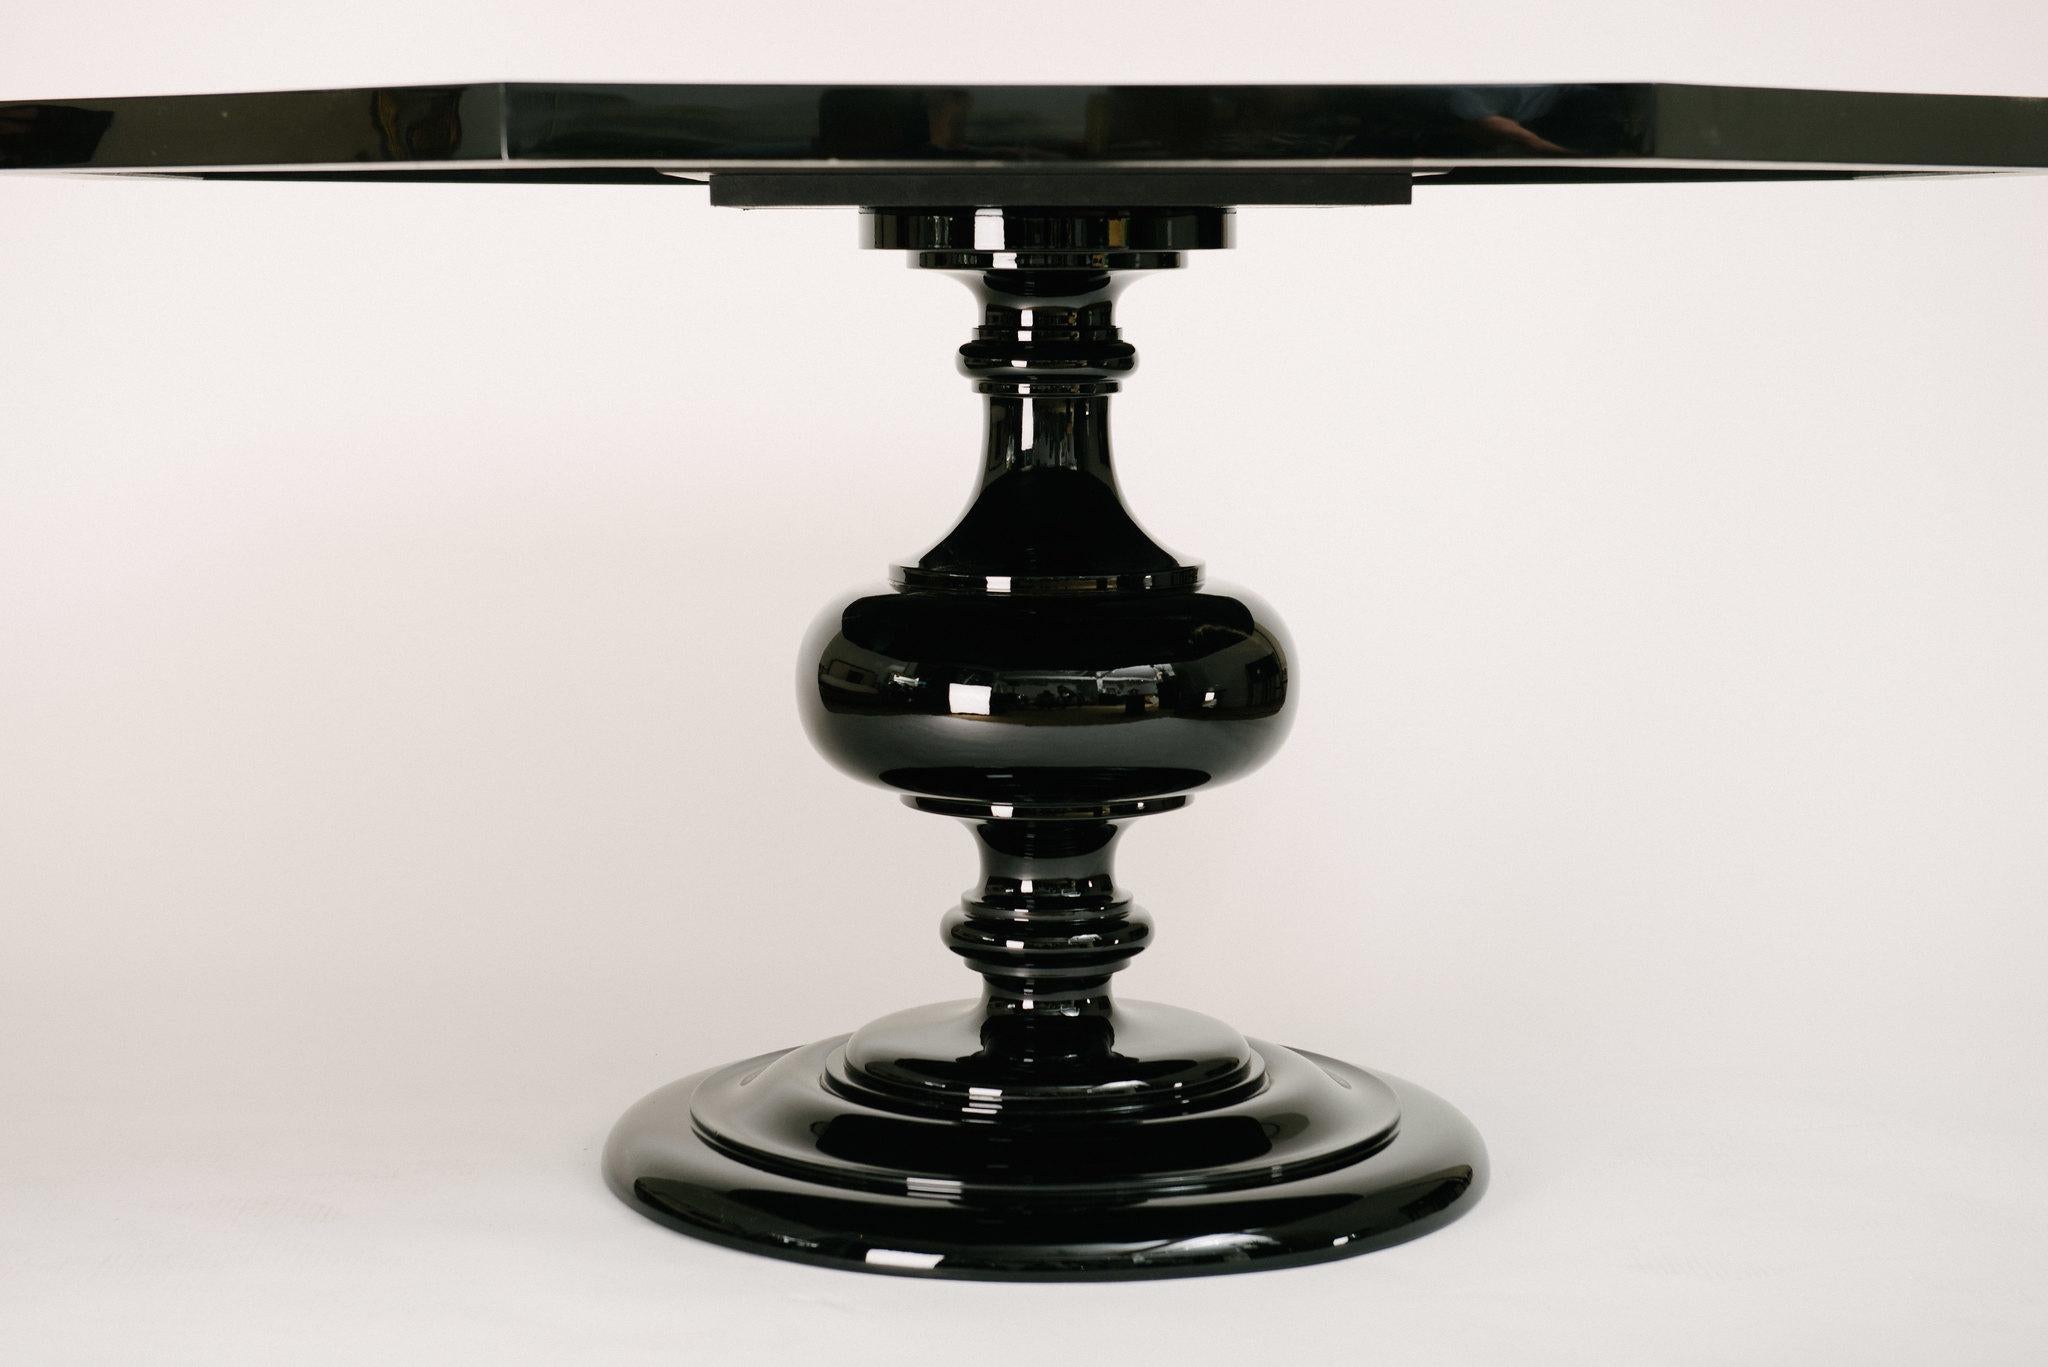 Haut de table octogonal laqué italien hautement stylisé avec fausse écaille de tortue et fausse ivoire, le tout sur une base à piédestal ébénisé.